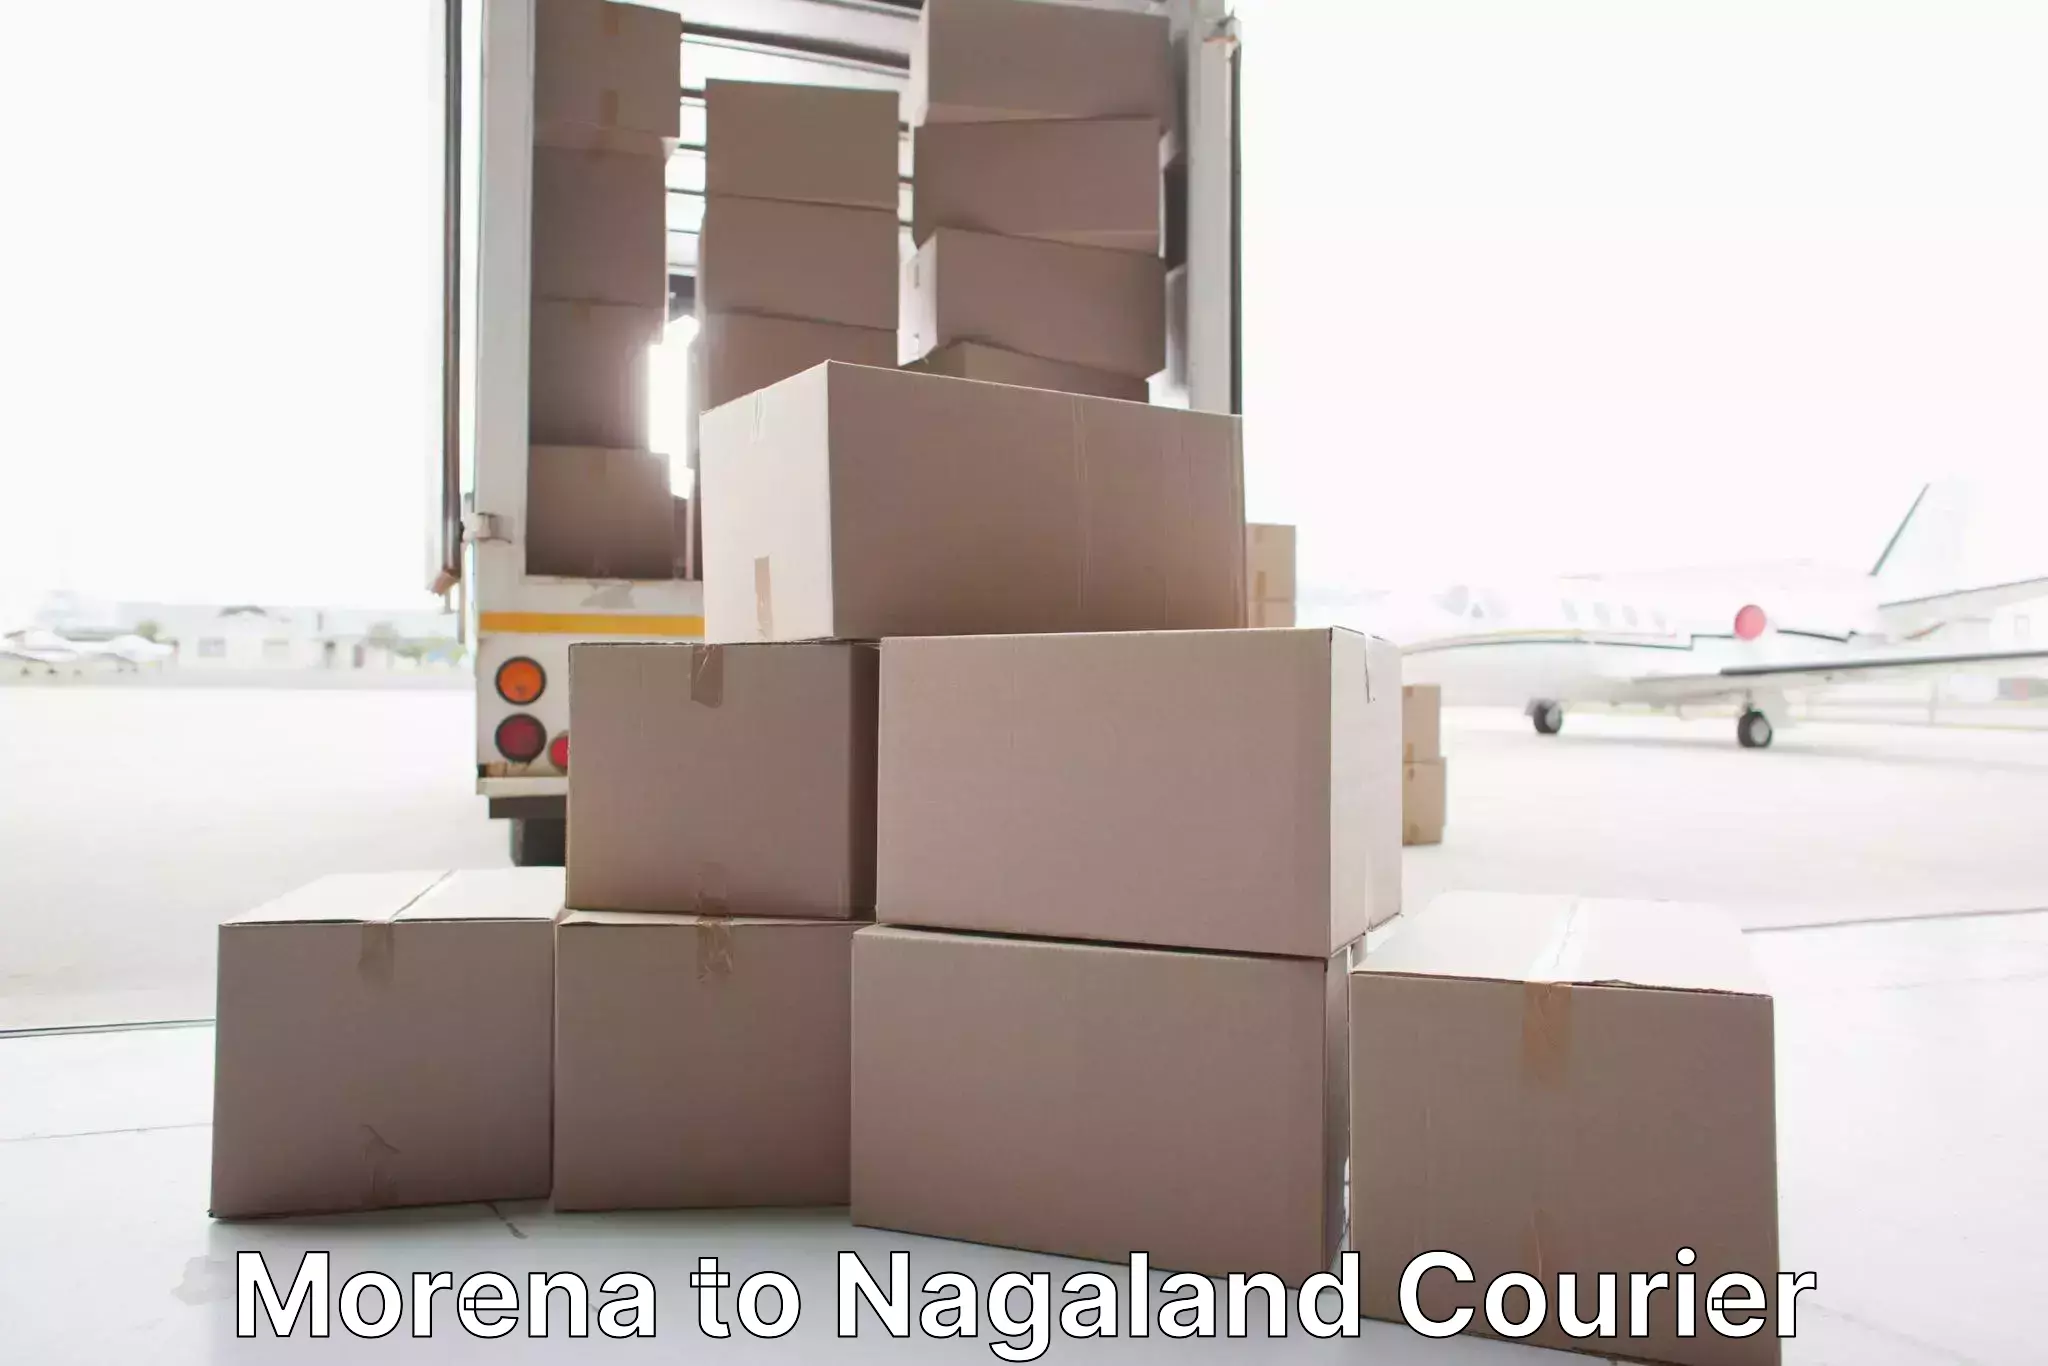 Furniture transport service Morena to NIT Nagaland